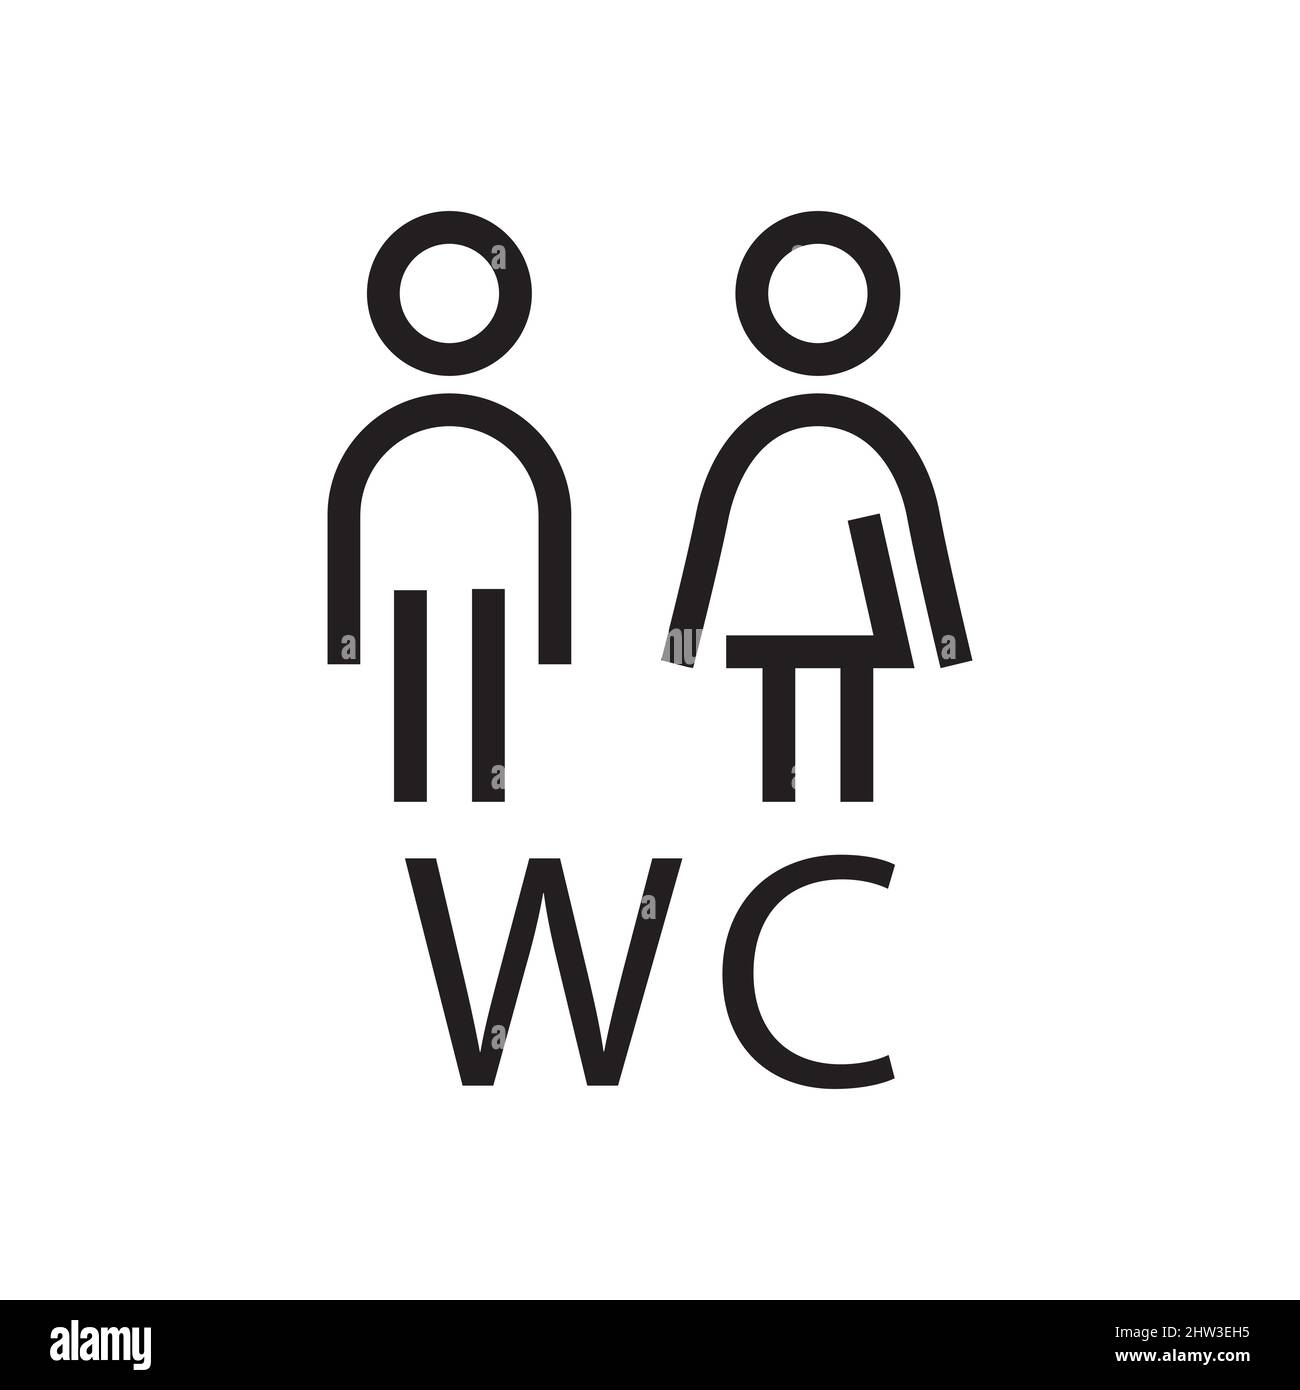 Pictogramme Vector toilettes publiques et logo wc Image Vectorielle Stock -  Alamy